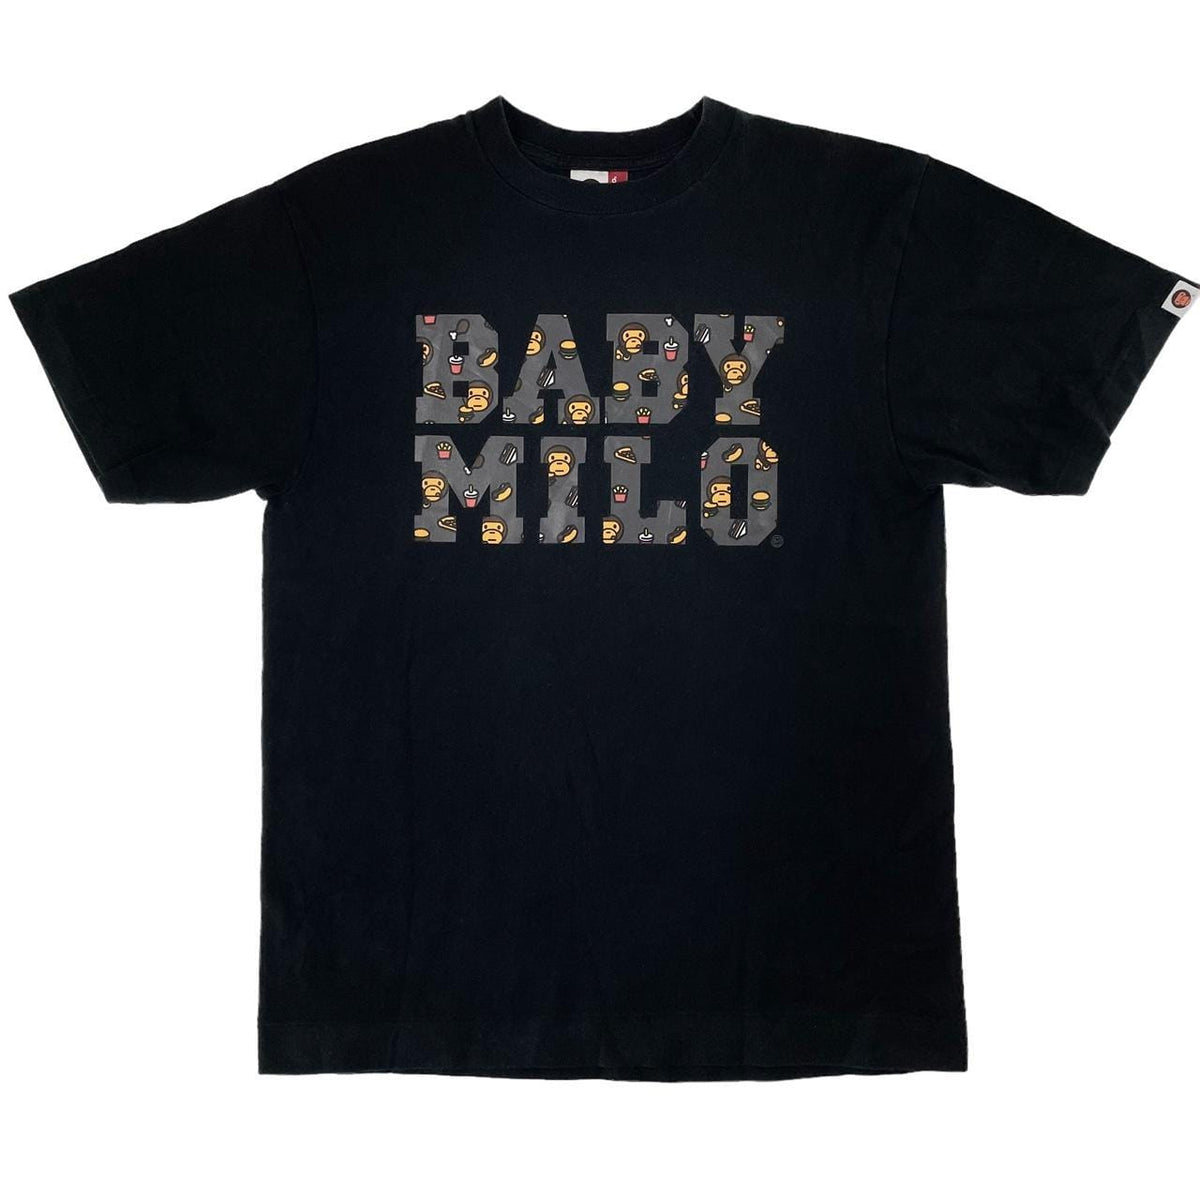 Bape baby milo t shirt size M